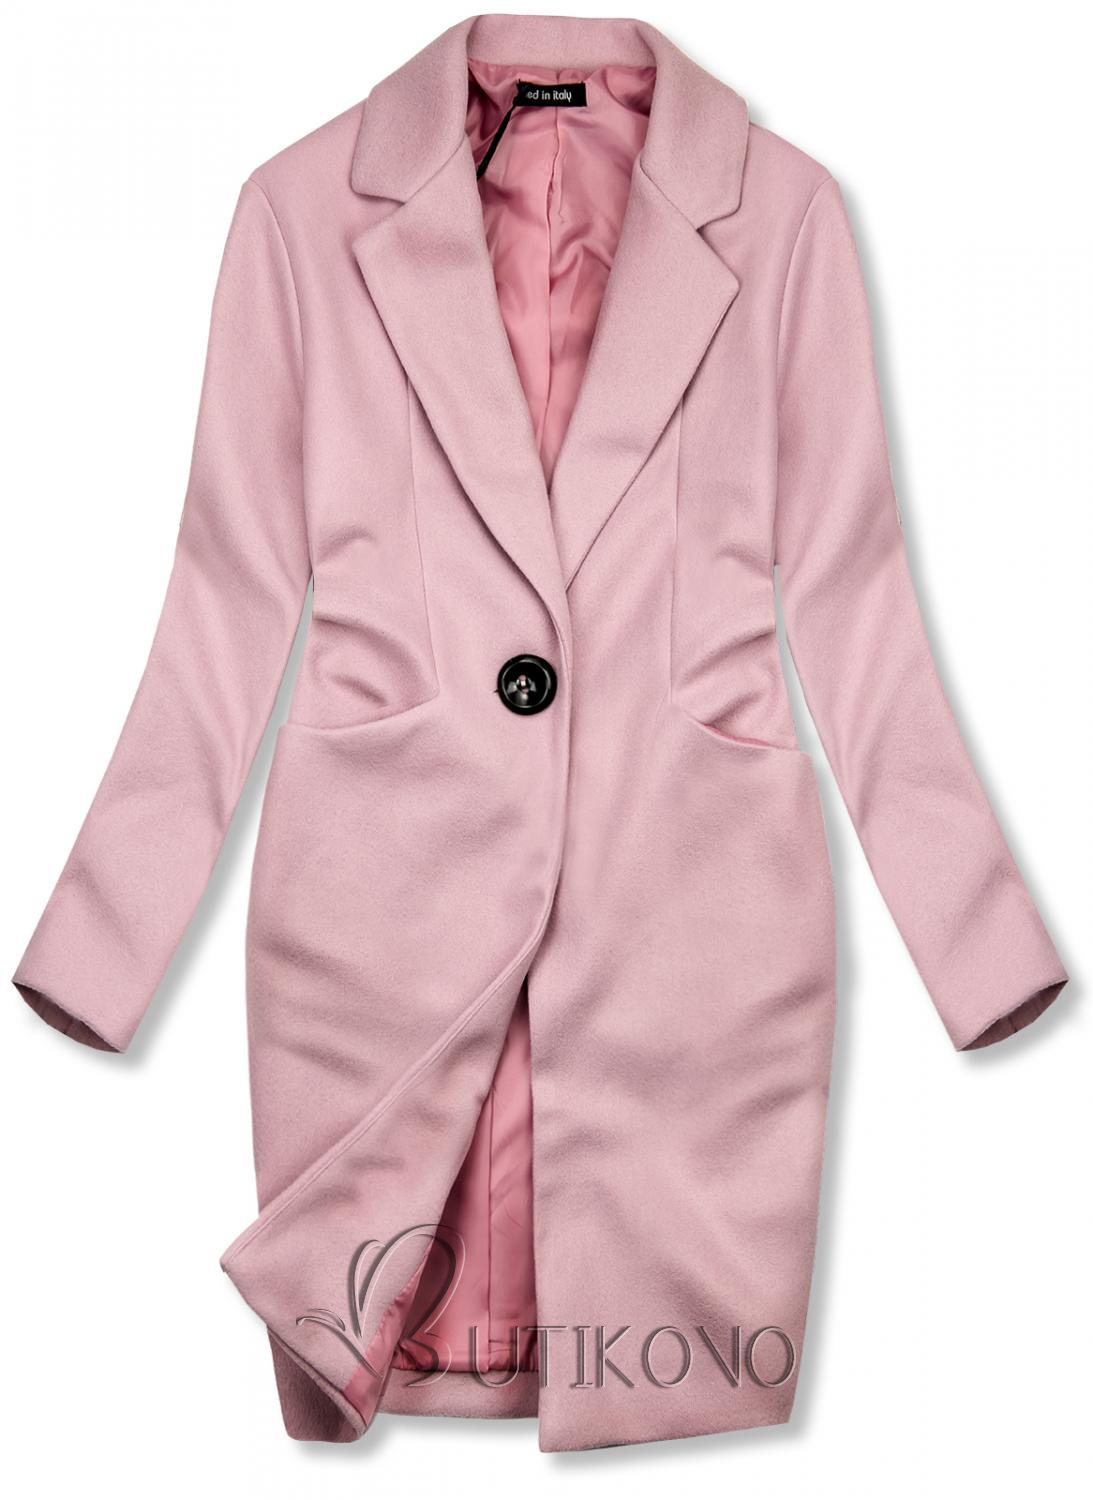 Růžový jarní kabát se zapínáním na knoflík